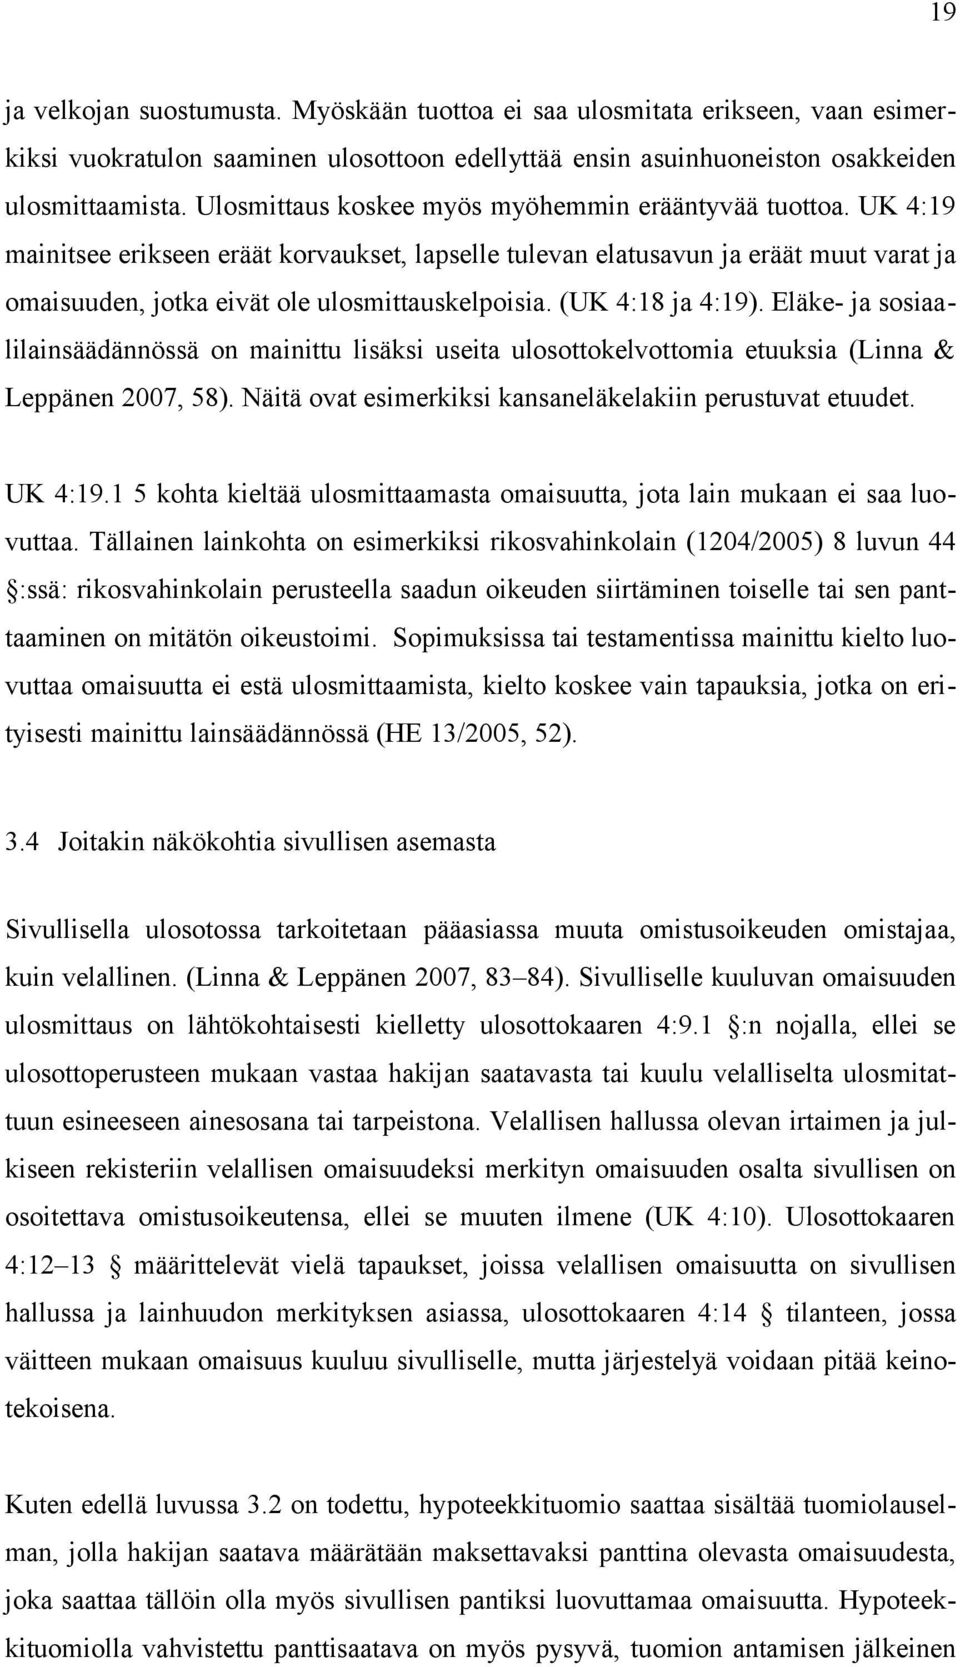 (UK 4:18 ja 4:19). Eläke- ja sosiaa lilainsäädännössä on mainittu lisäksi useita ulosottokelvottomia etuuksia (Linna & Leppänen 2007, 58). Näitä ovat esimerkiksi kansaneläkelakiin perustuvat etuudet.